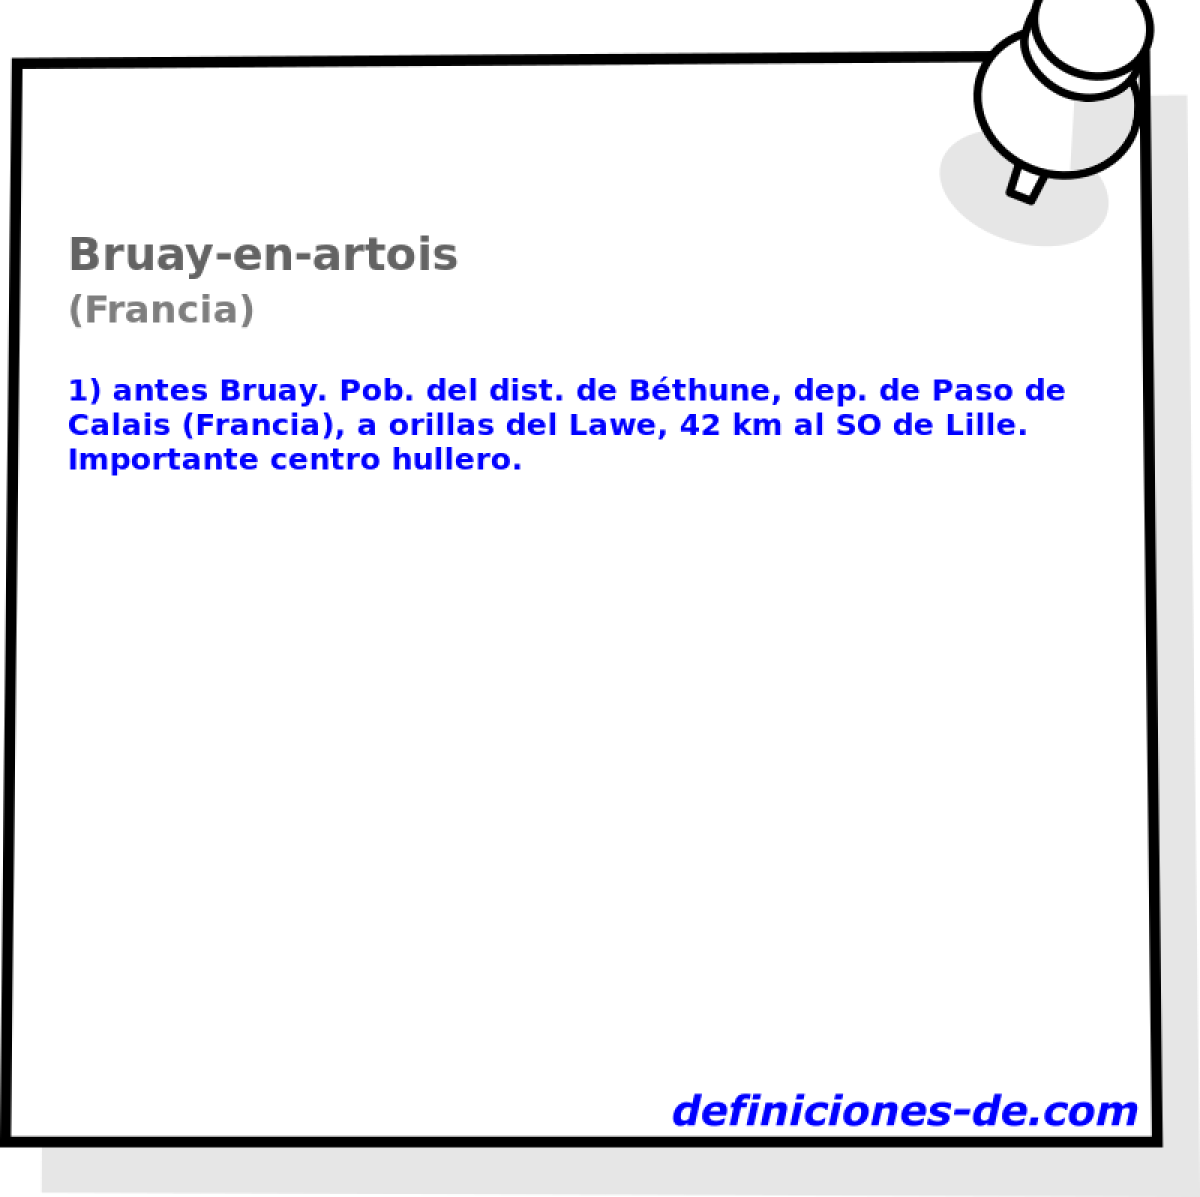 Bruay-en-artois (Francia)